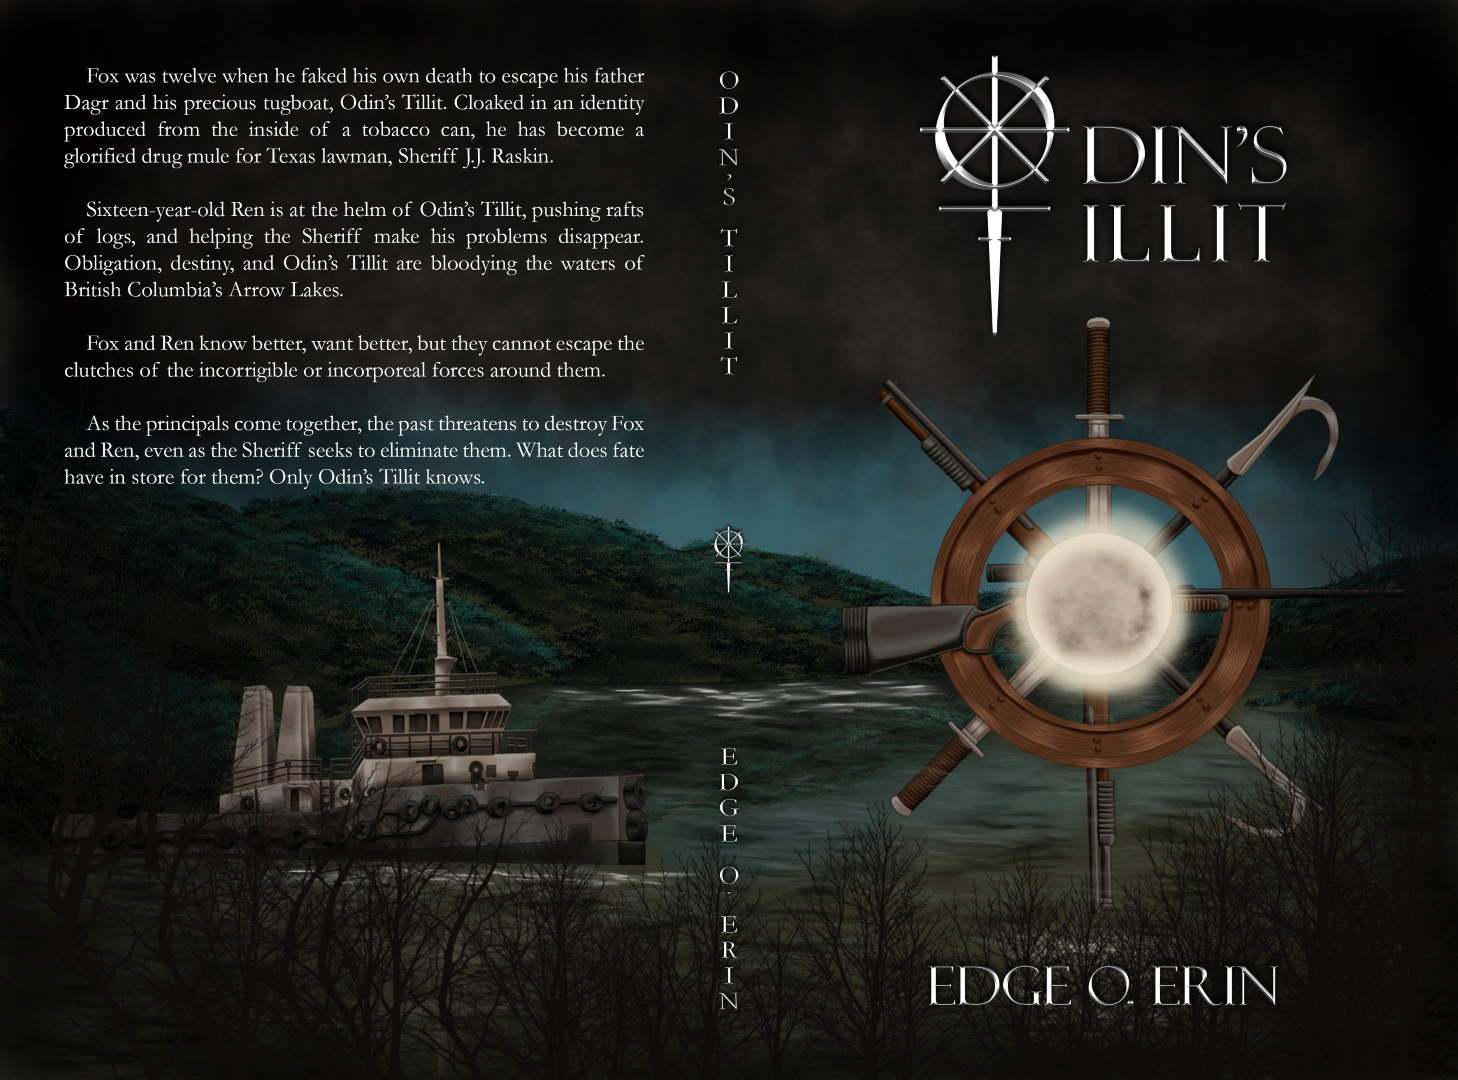 Full hardcover image for the mystery suspense thriller, Odin's Tillit